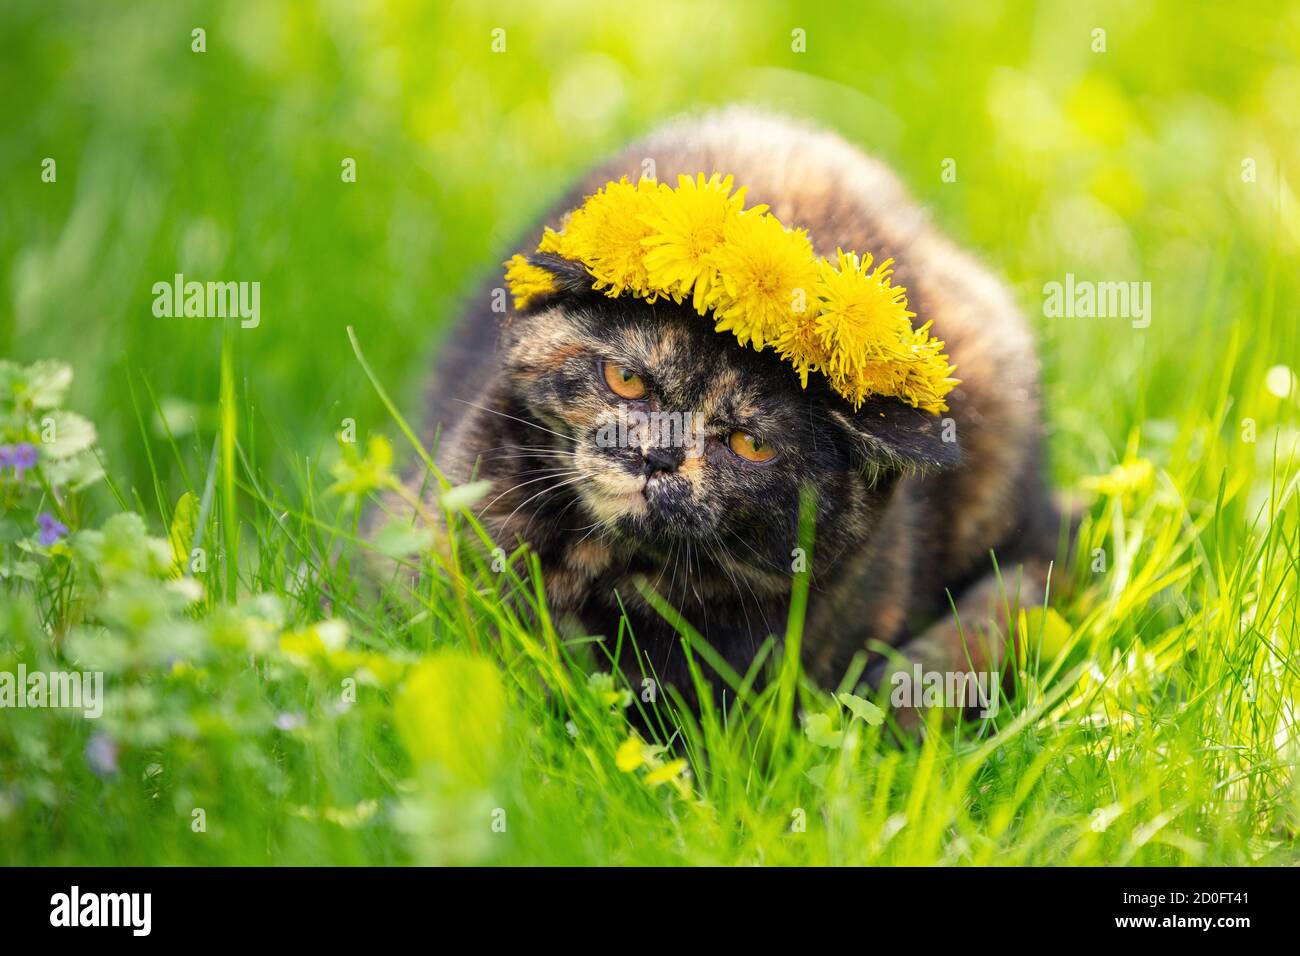 Divertente gattino di tortoiseshell in una corona di fiori di dente di leone giace sull'erba Foto Stock